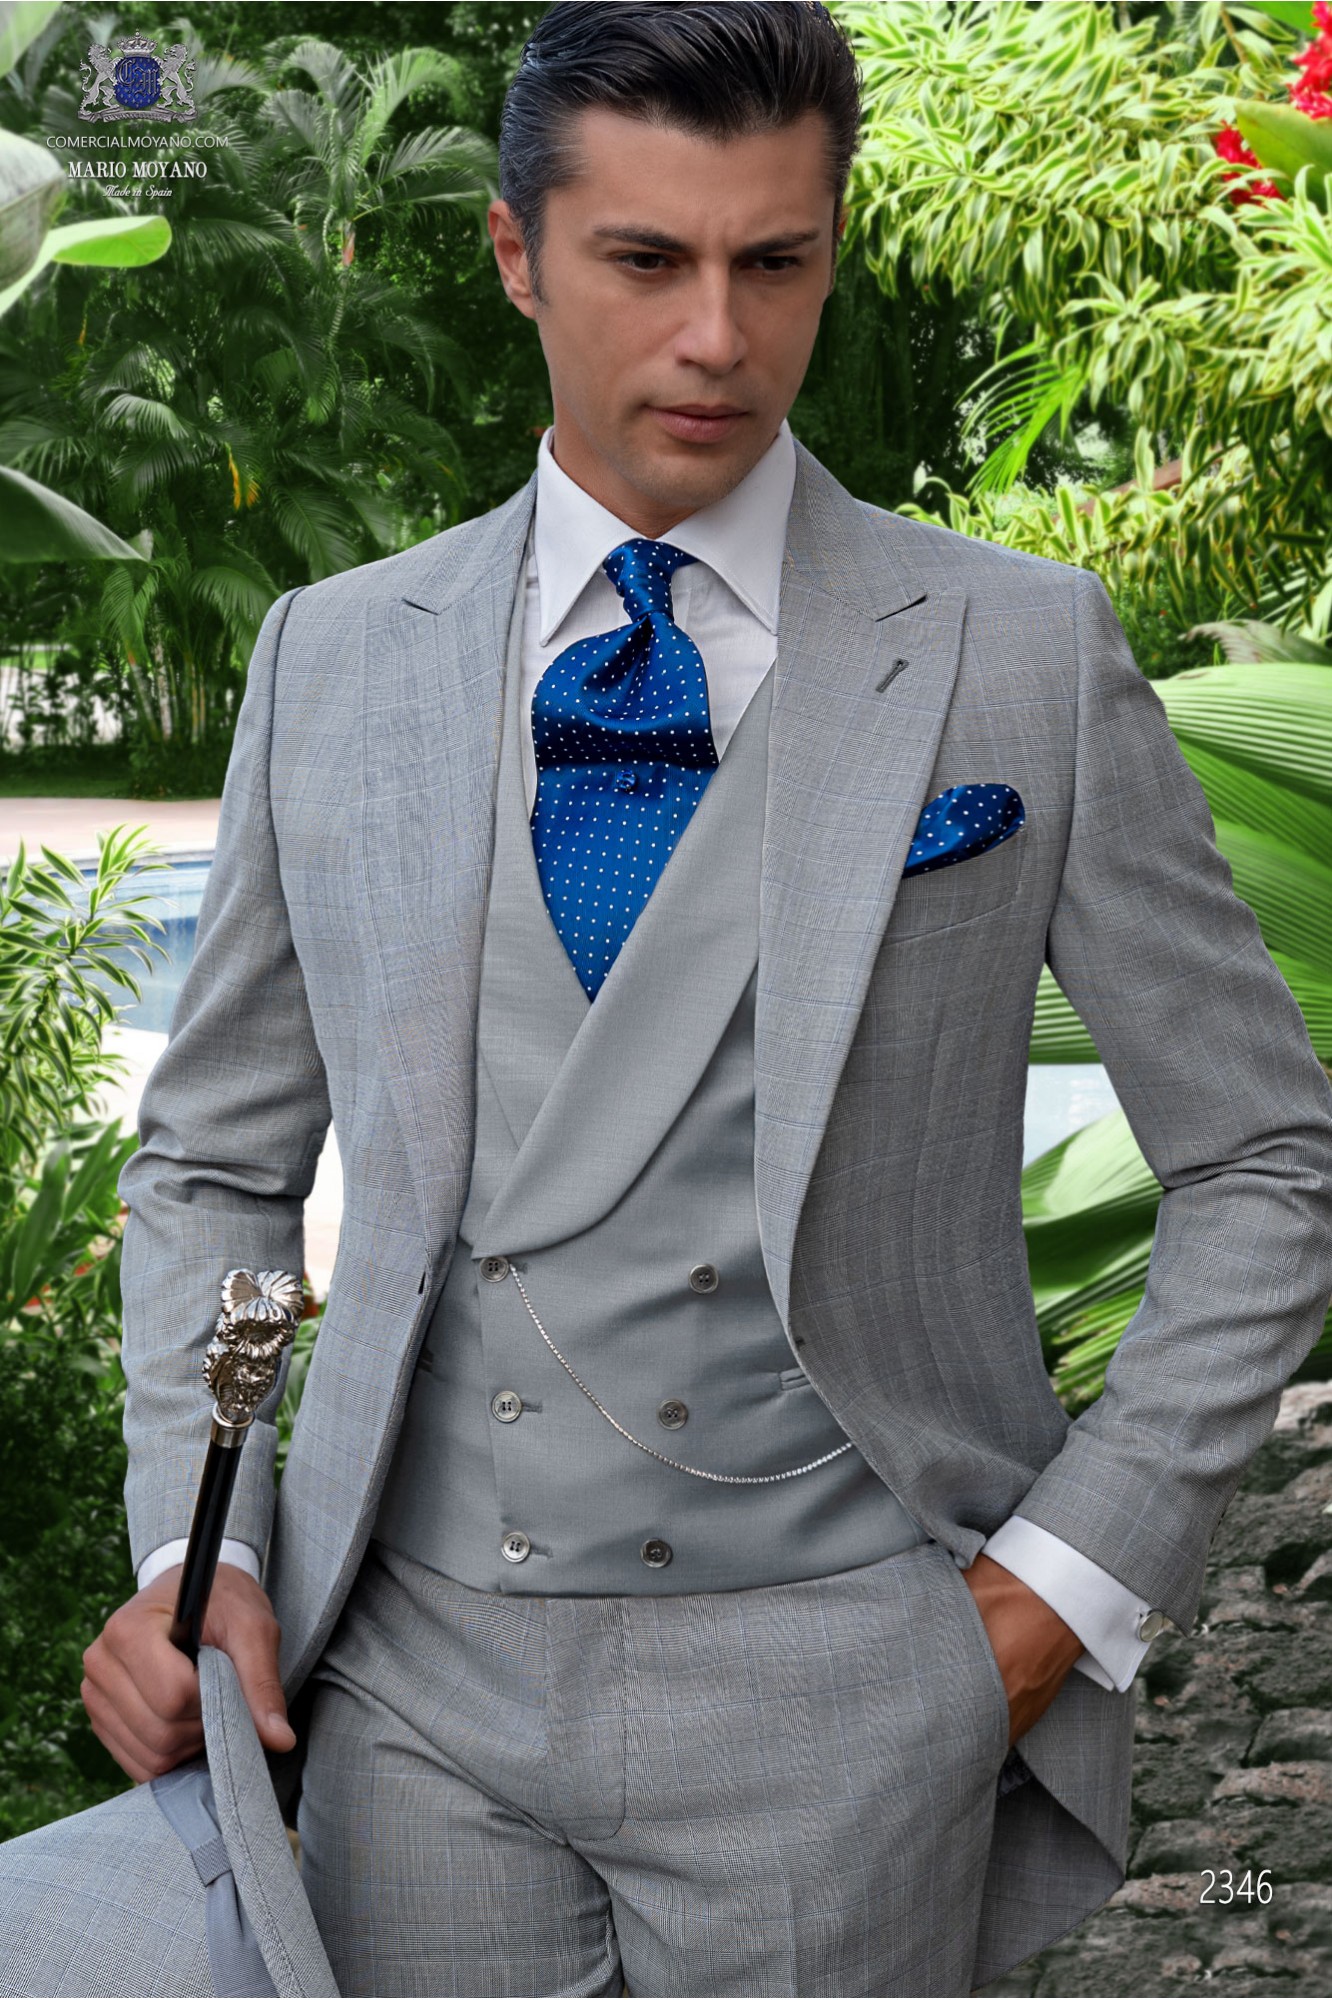 Chaqué de novio príncipe de gales gris y azul modelo: 2346 Mario Moyano colección Gentleman